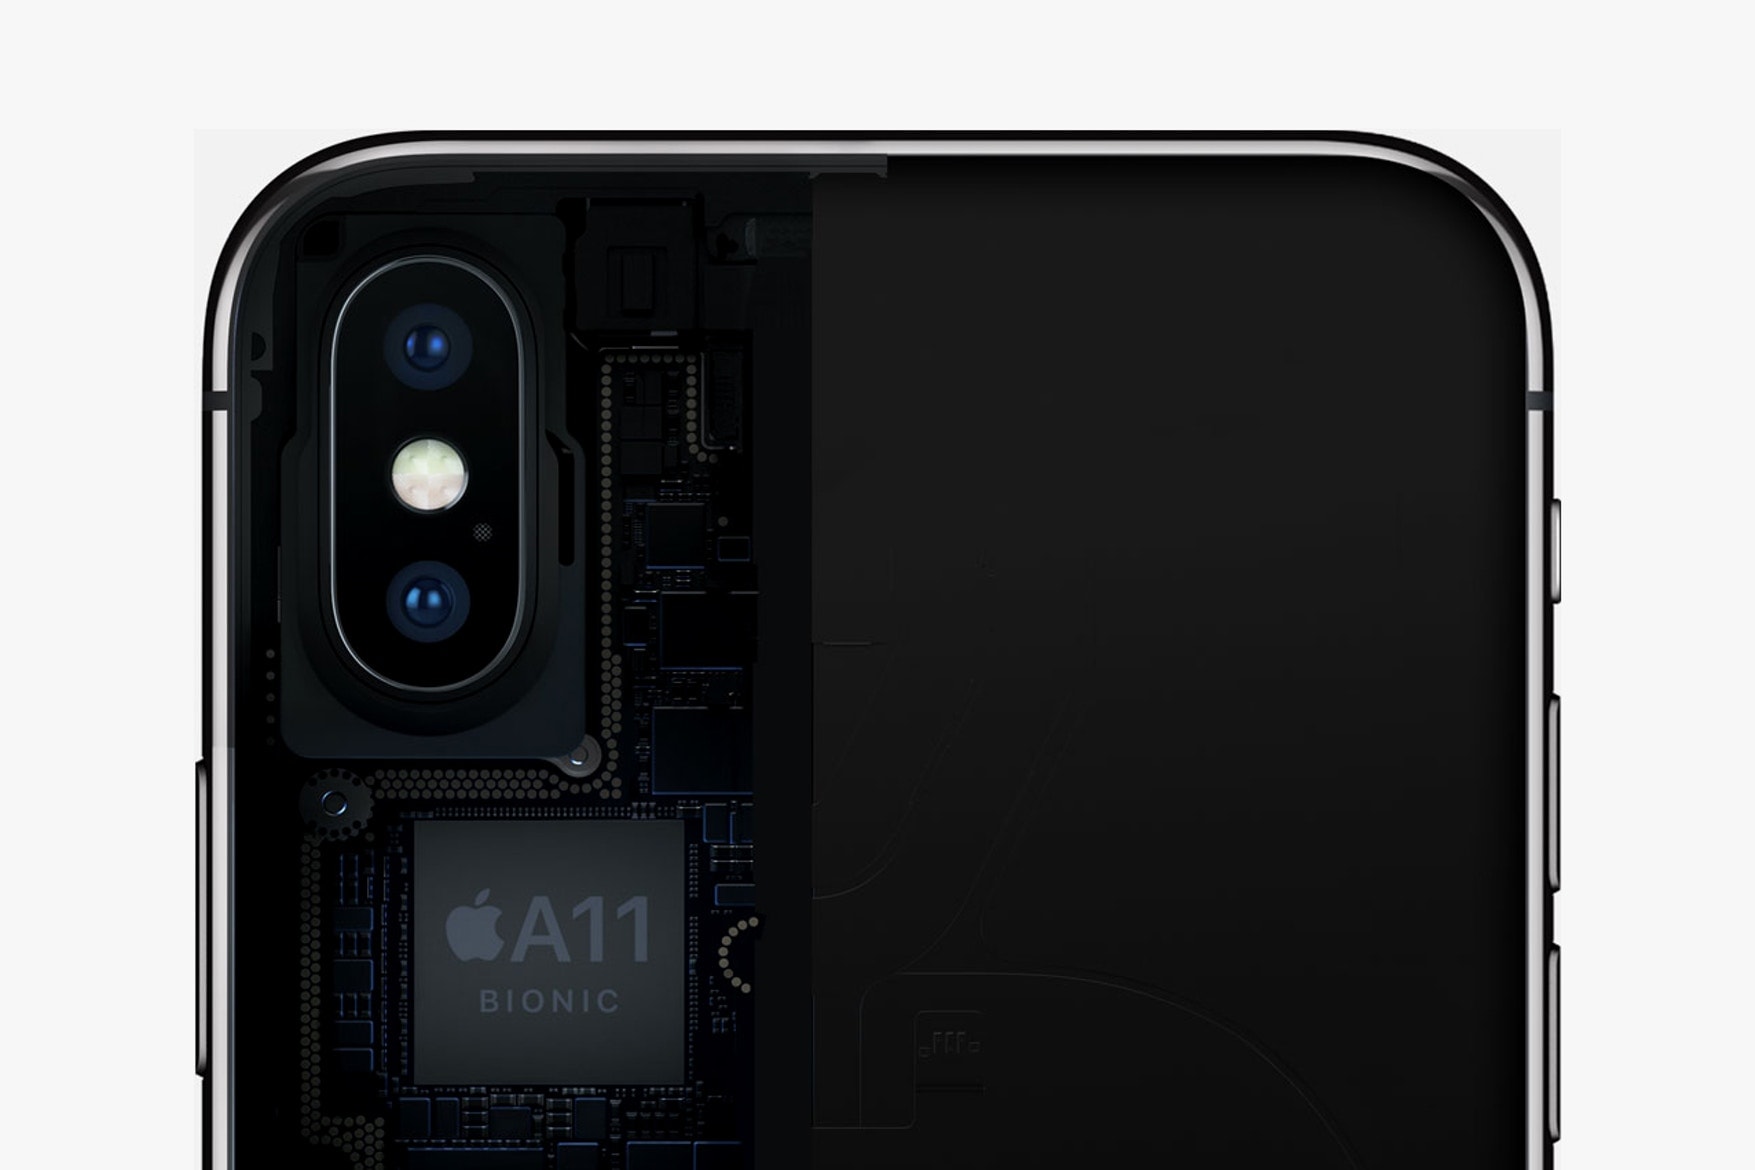 2019年リリースの iPhone は背面にトリプルカメラを搭載か